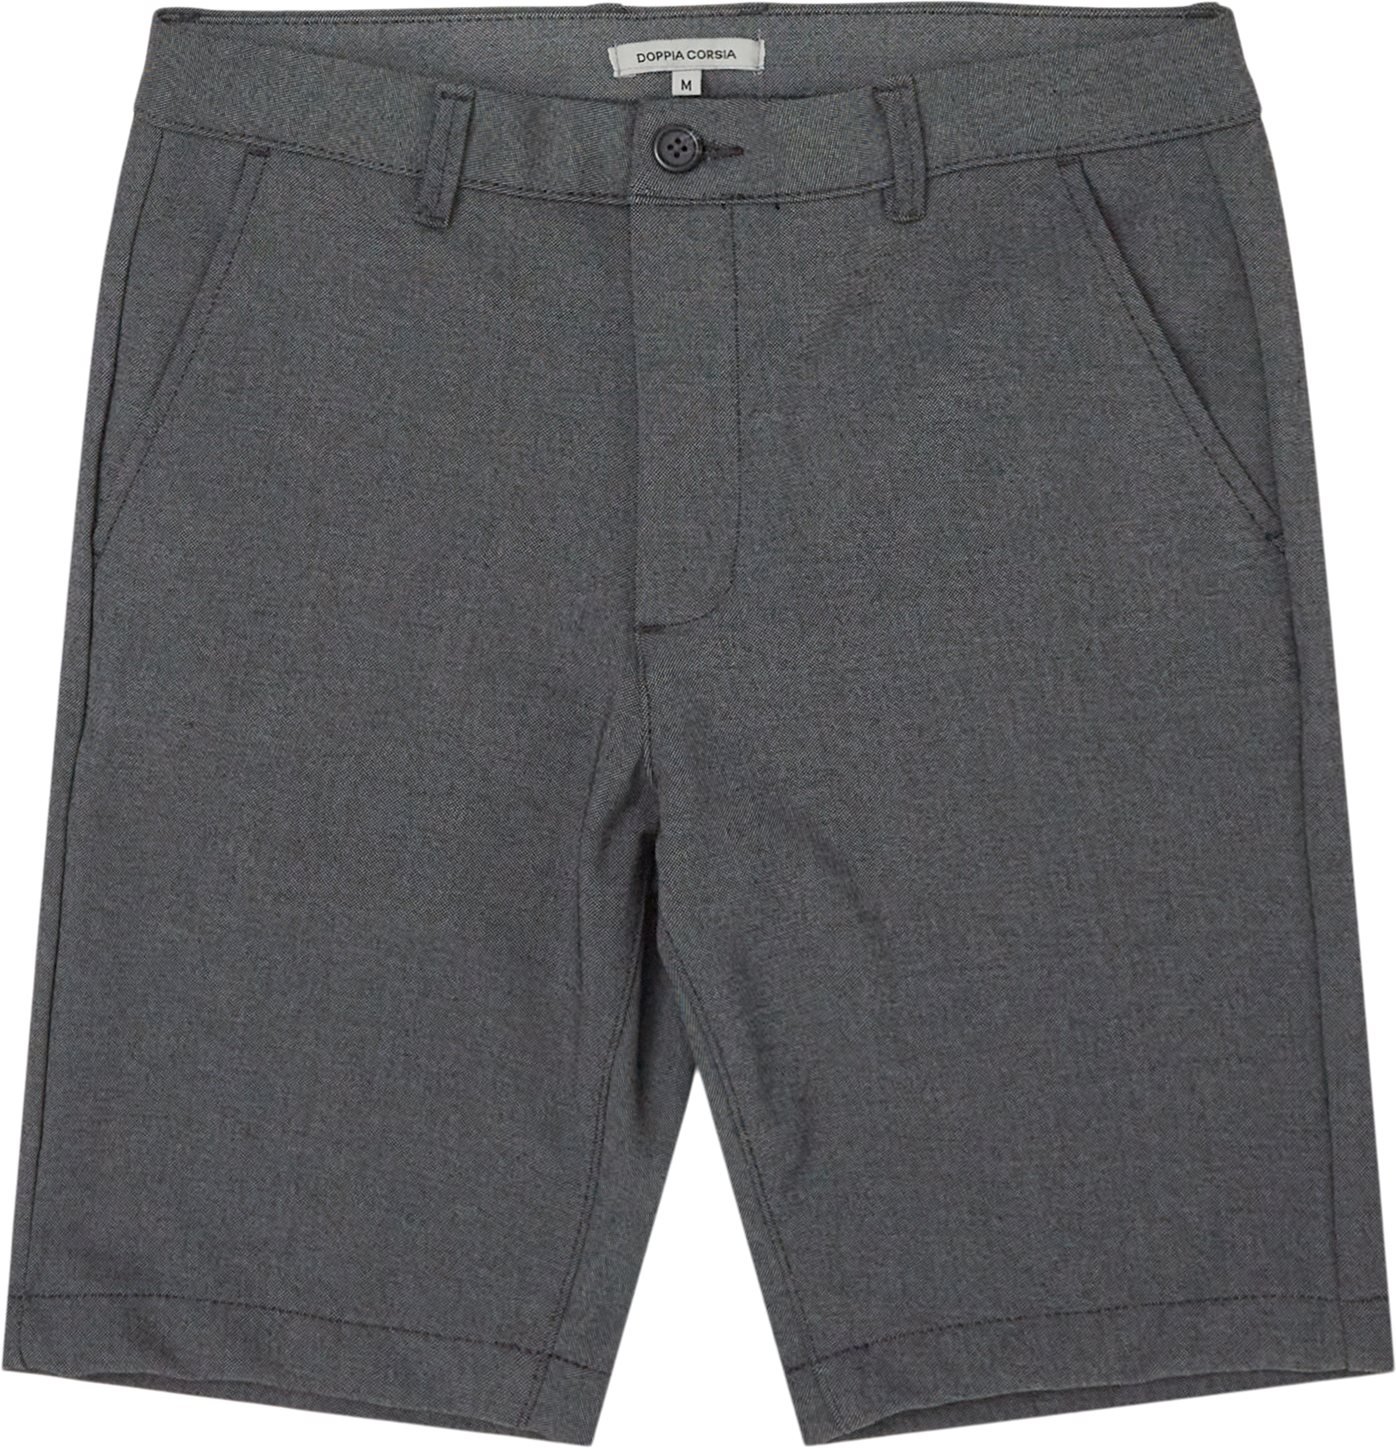 Colette Shorts - Shorts - Regular fit - Grey